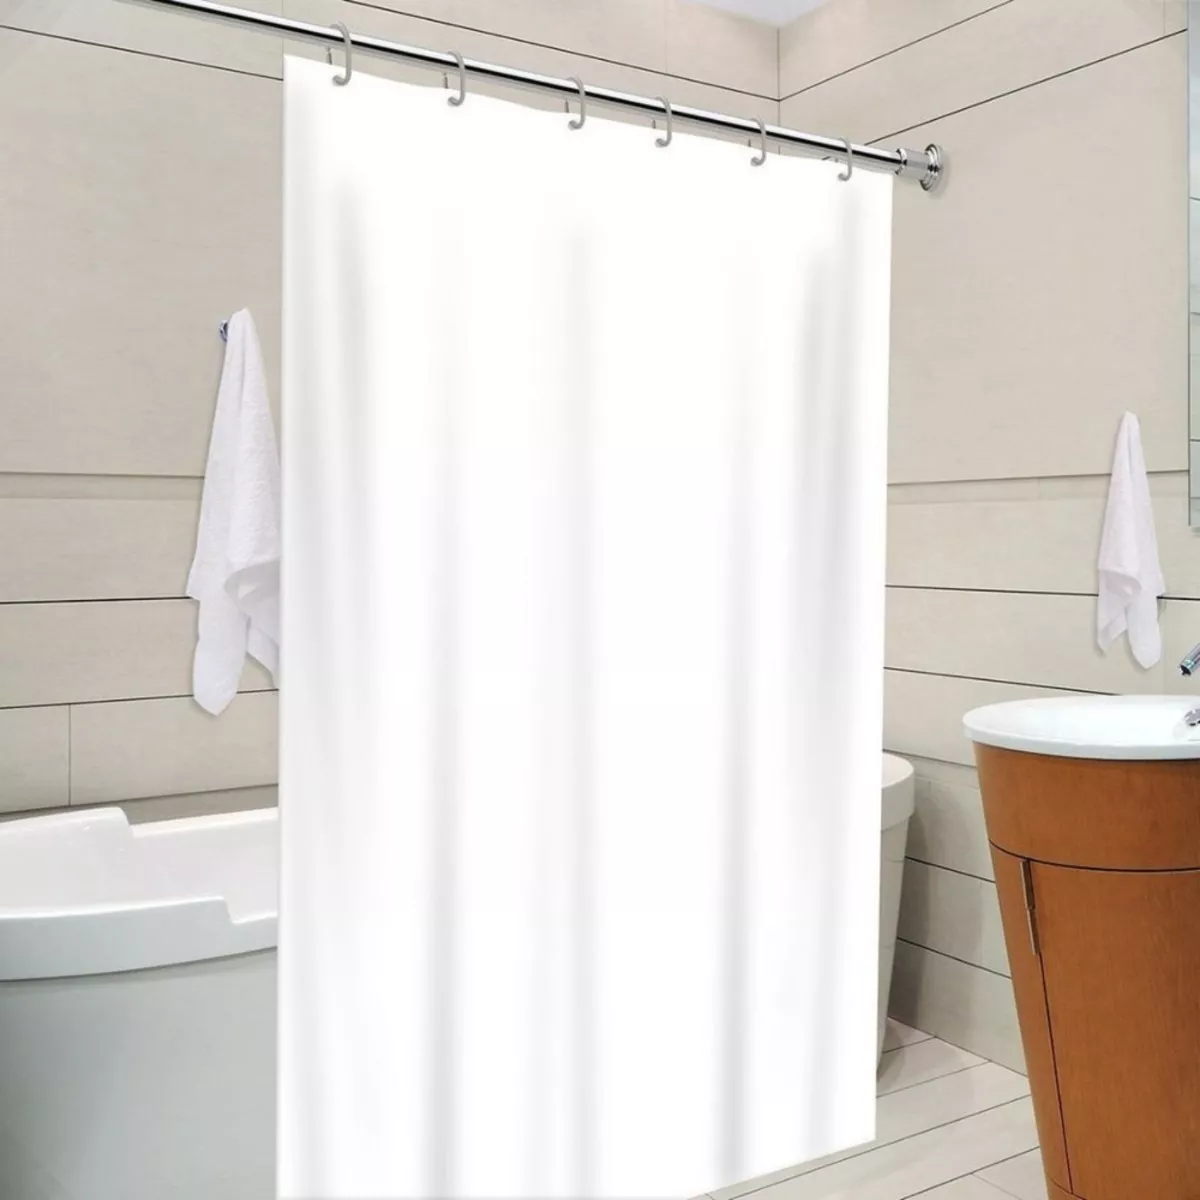 Segunda imagem para pesquisa de cortina de banheiro